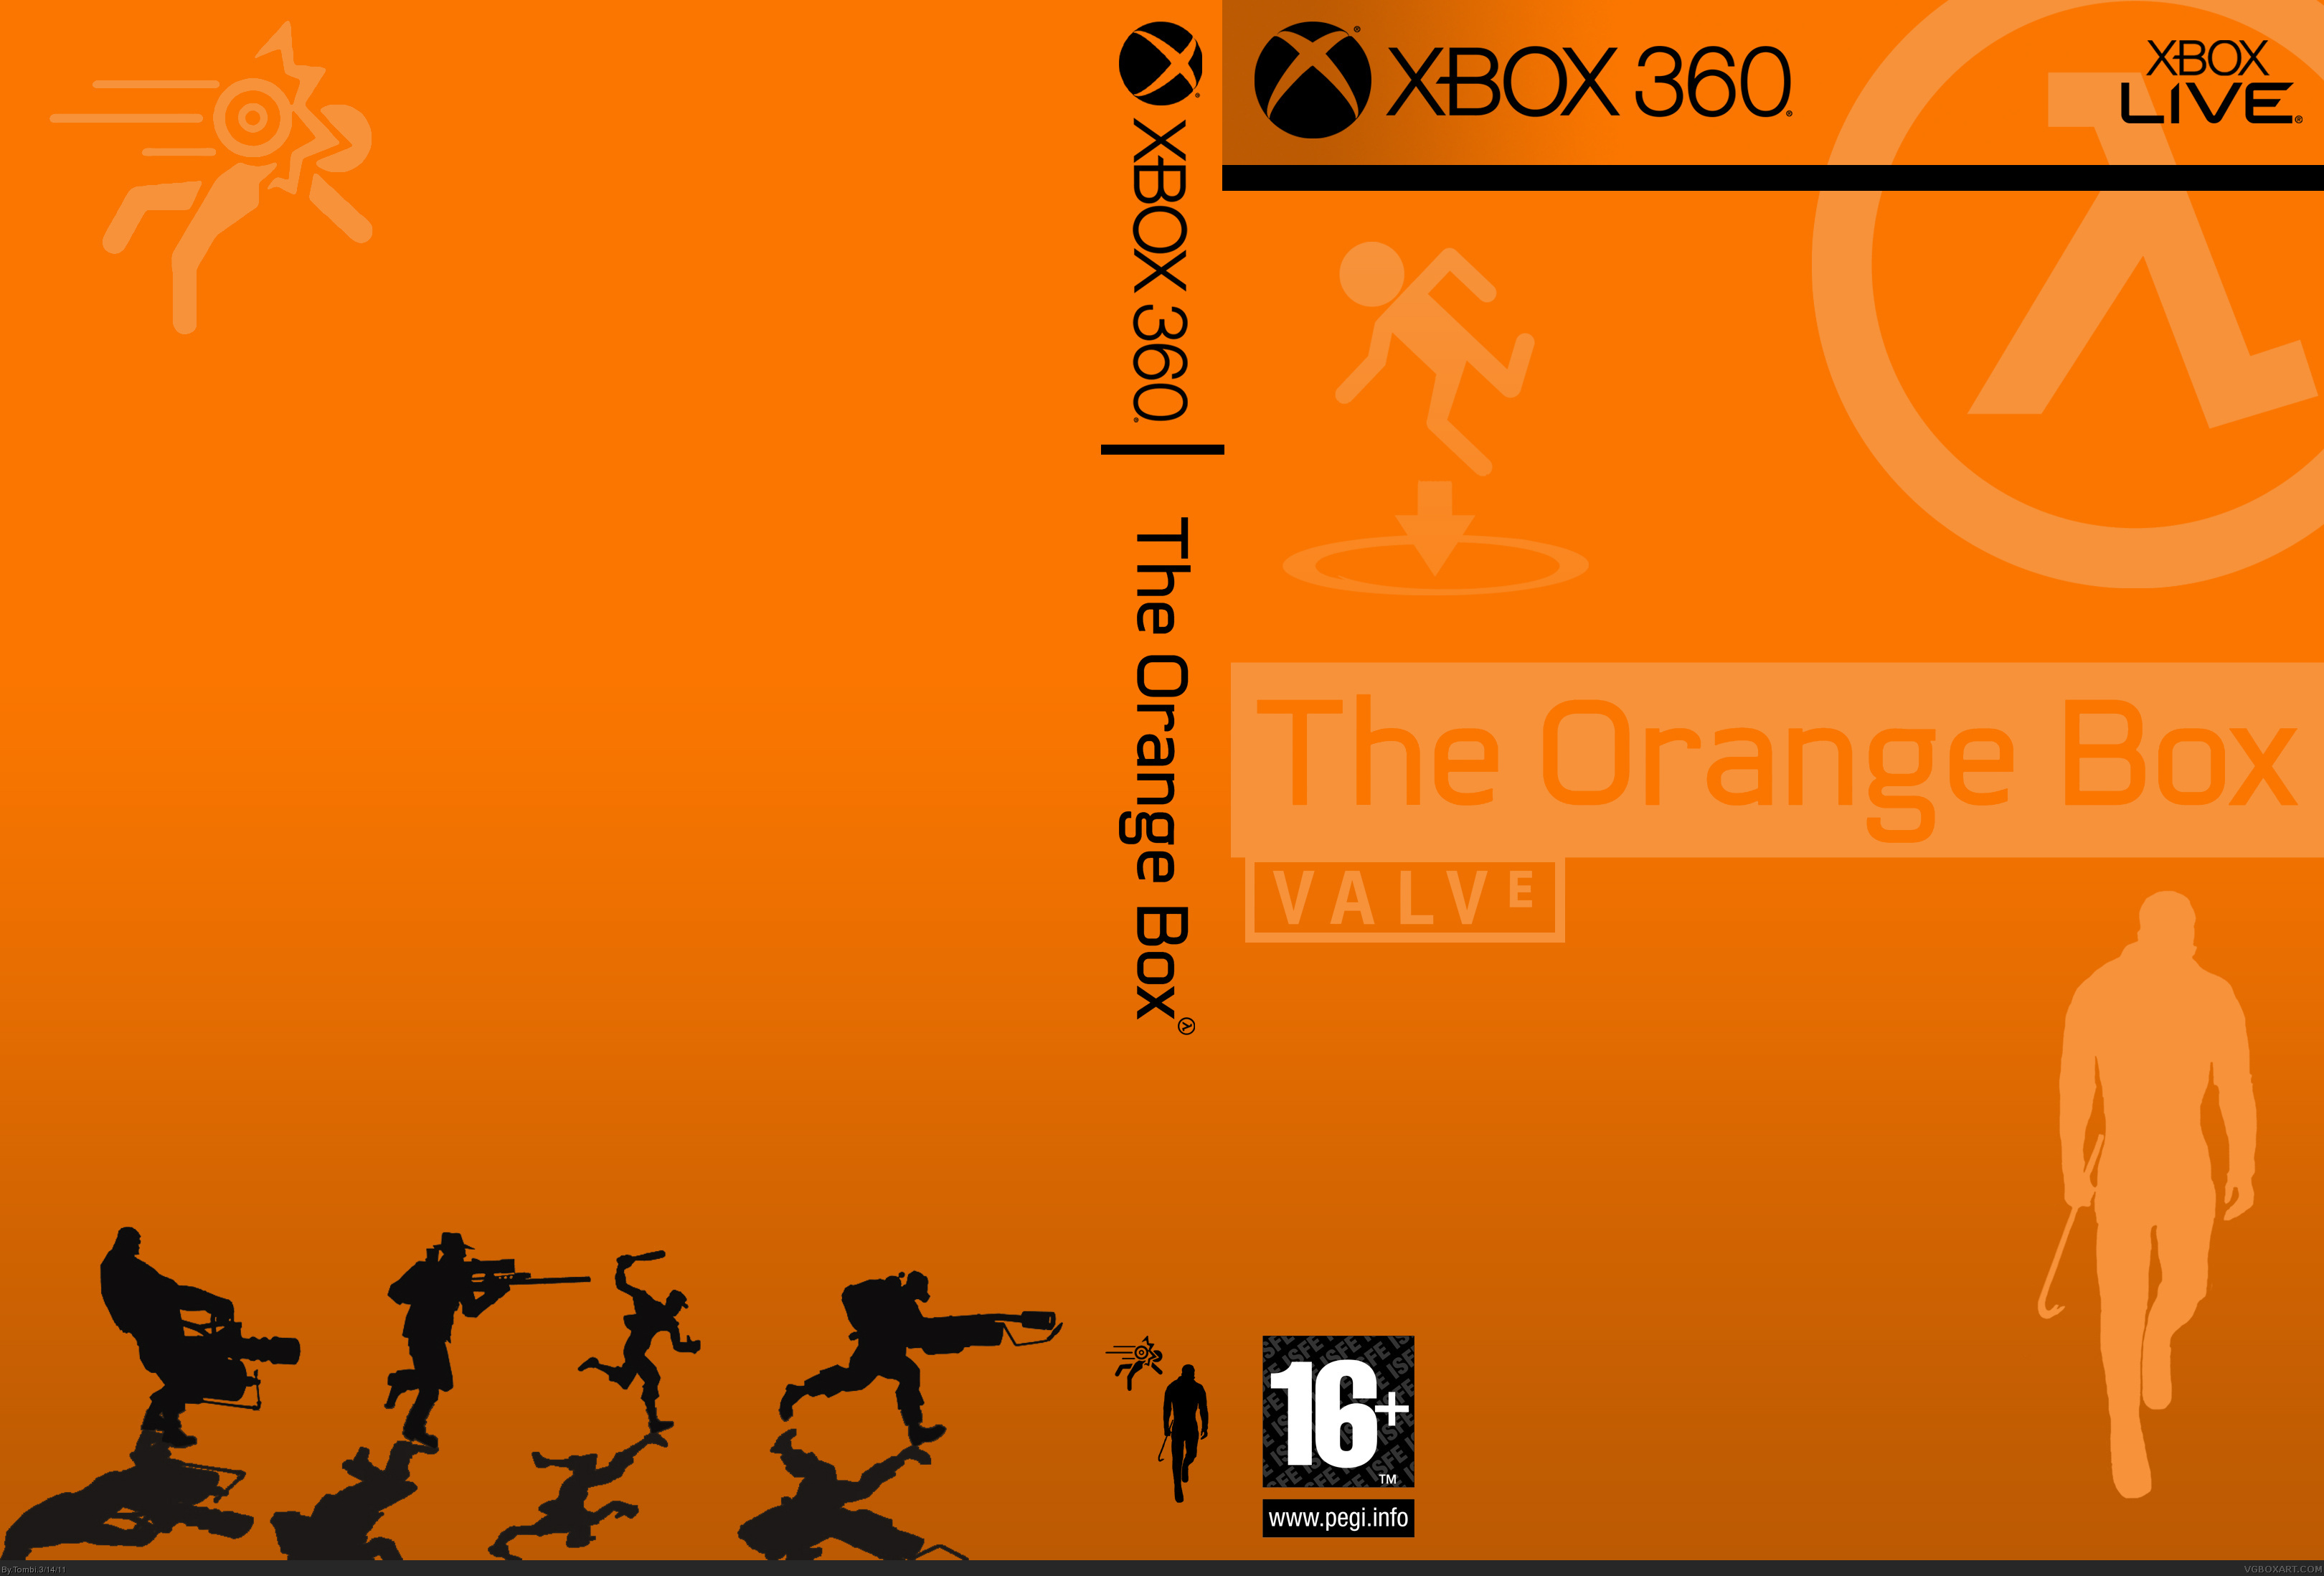 The Orange Box box cover